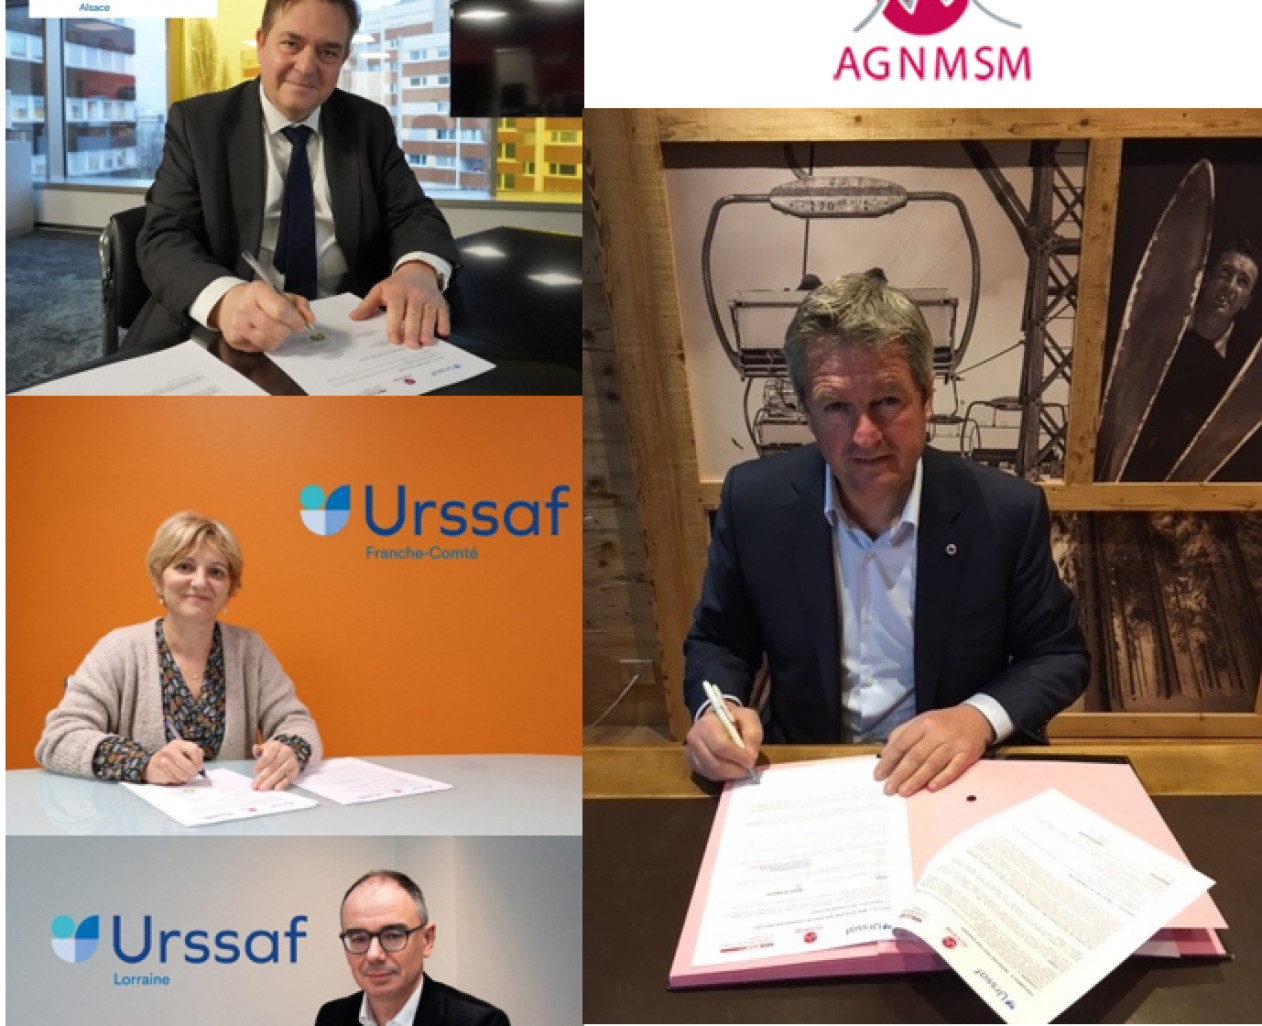 Les Urssaf Lorraine, Alsace et Franche-Comté viennent de signer un partenariat avec l’AGNMSM et le SNMSF.